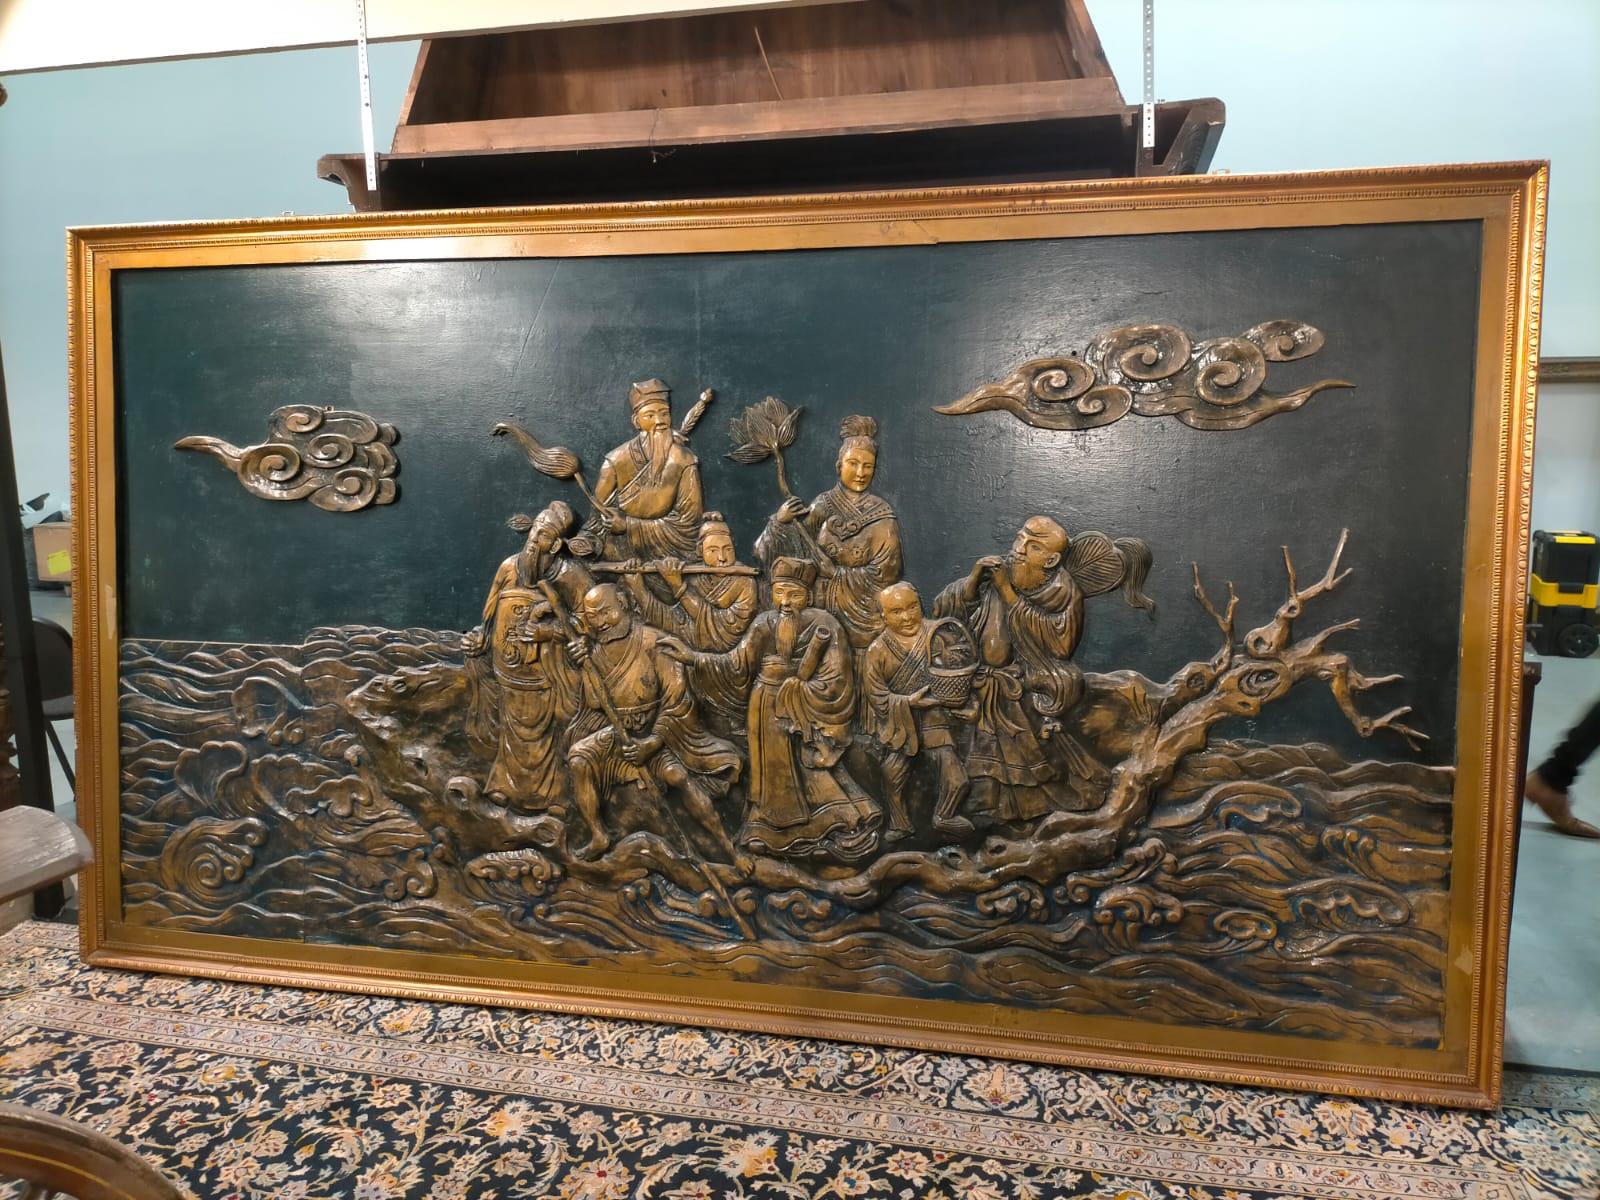 Bas-relief chinois représentant les huit immortels et la « chute des mers »
Bas-relief représentant LES HUIT IMMORTELS et la 